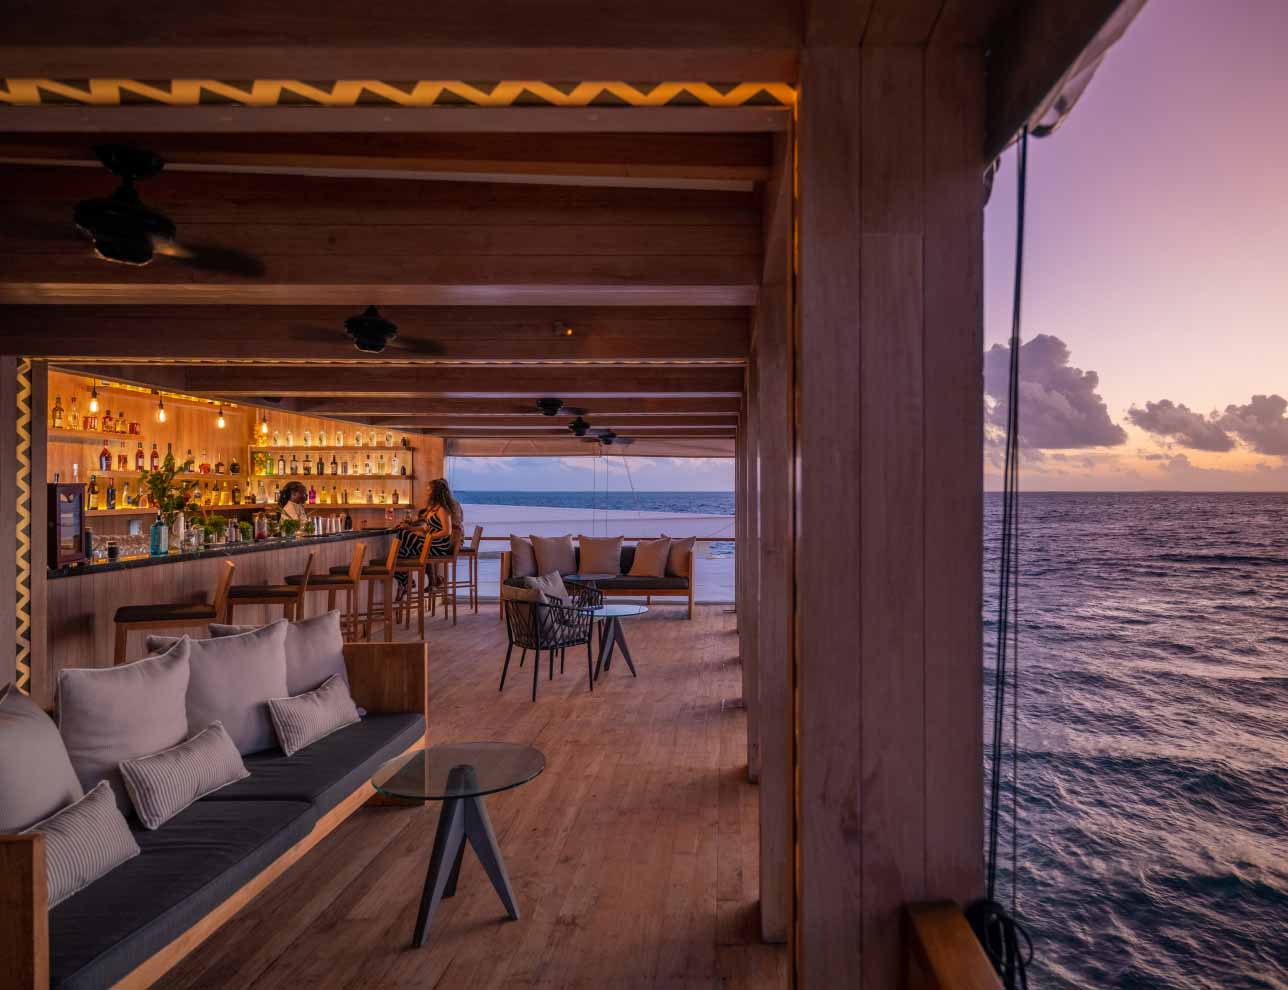 Amilla Maldives Sunset Bar overlooking the ocean.